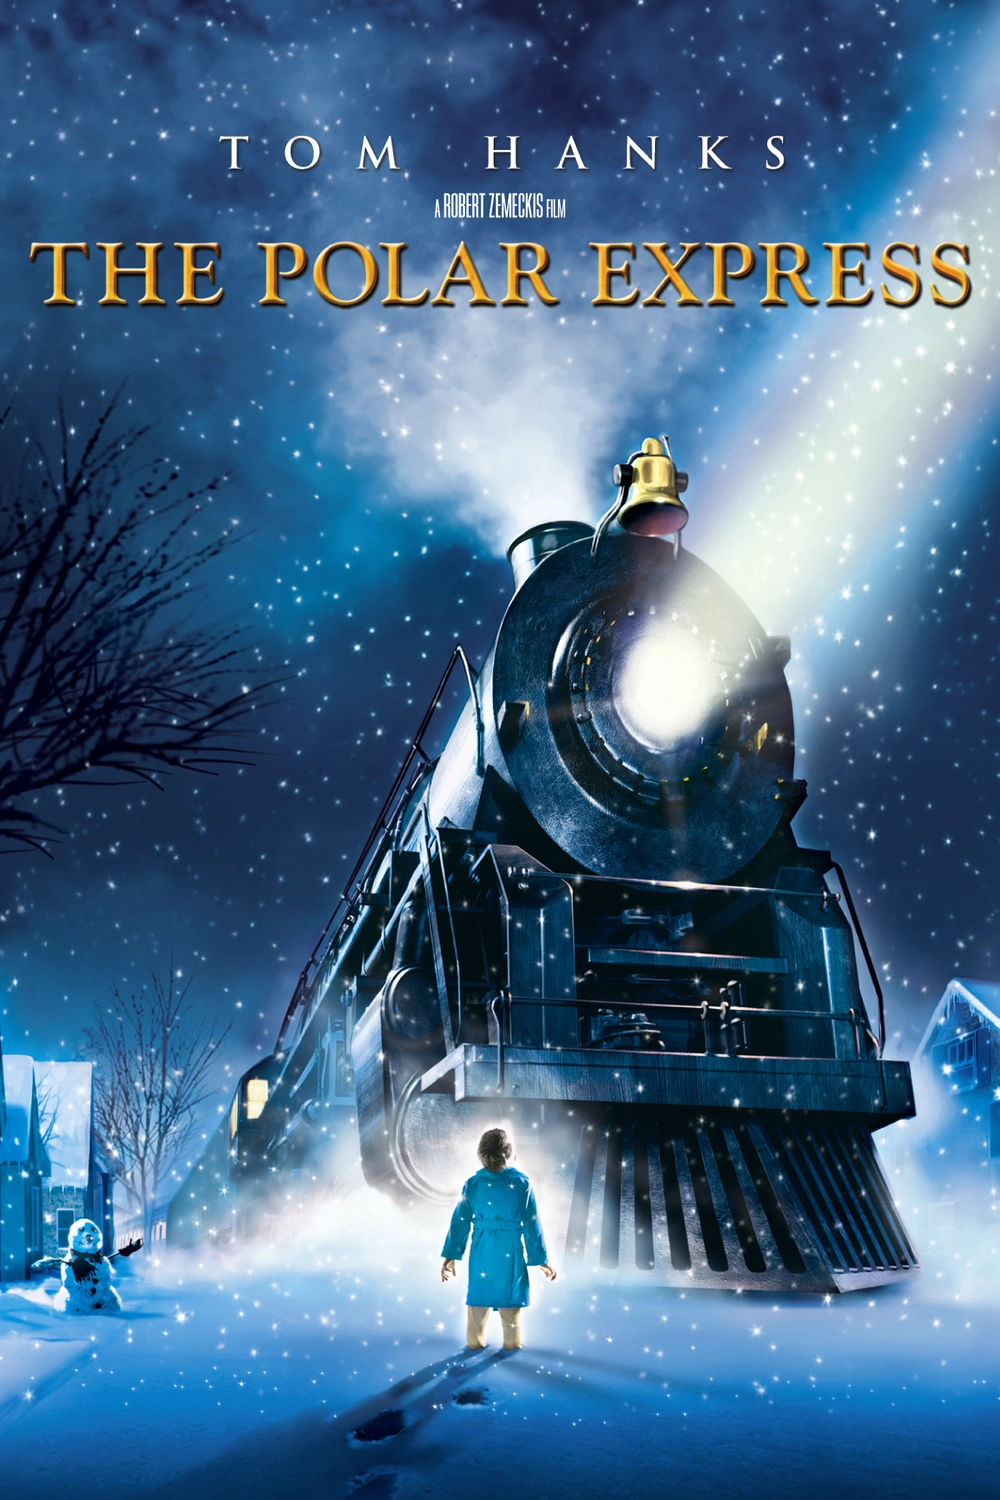 Χριστουγεννιάτικες ταινίες: The polar express 